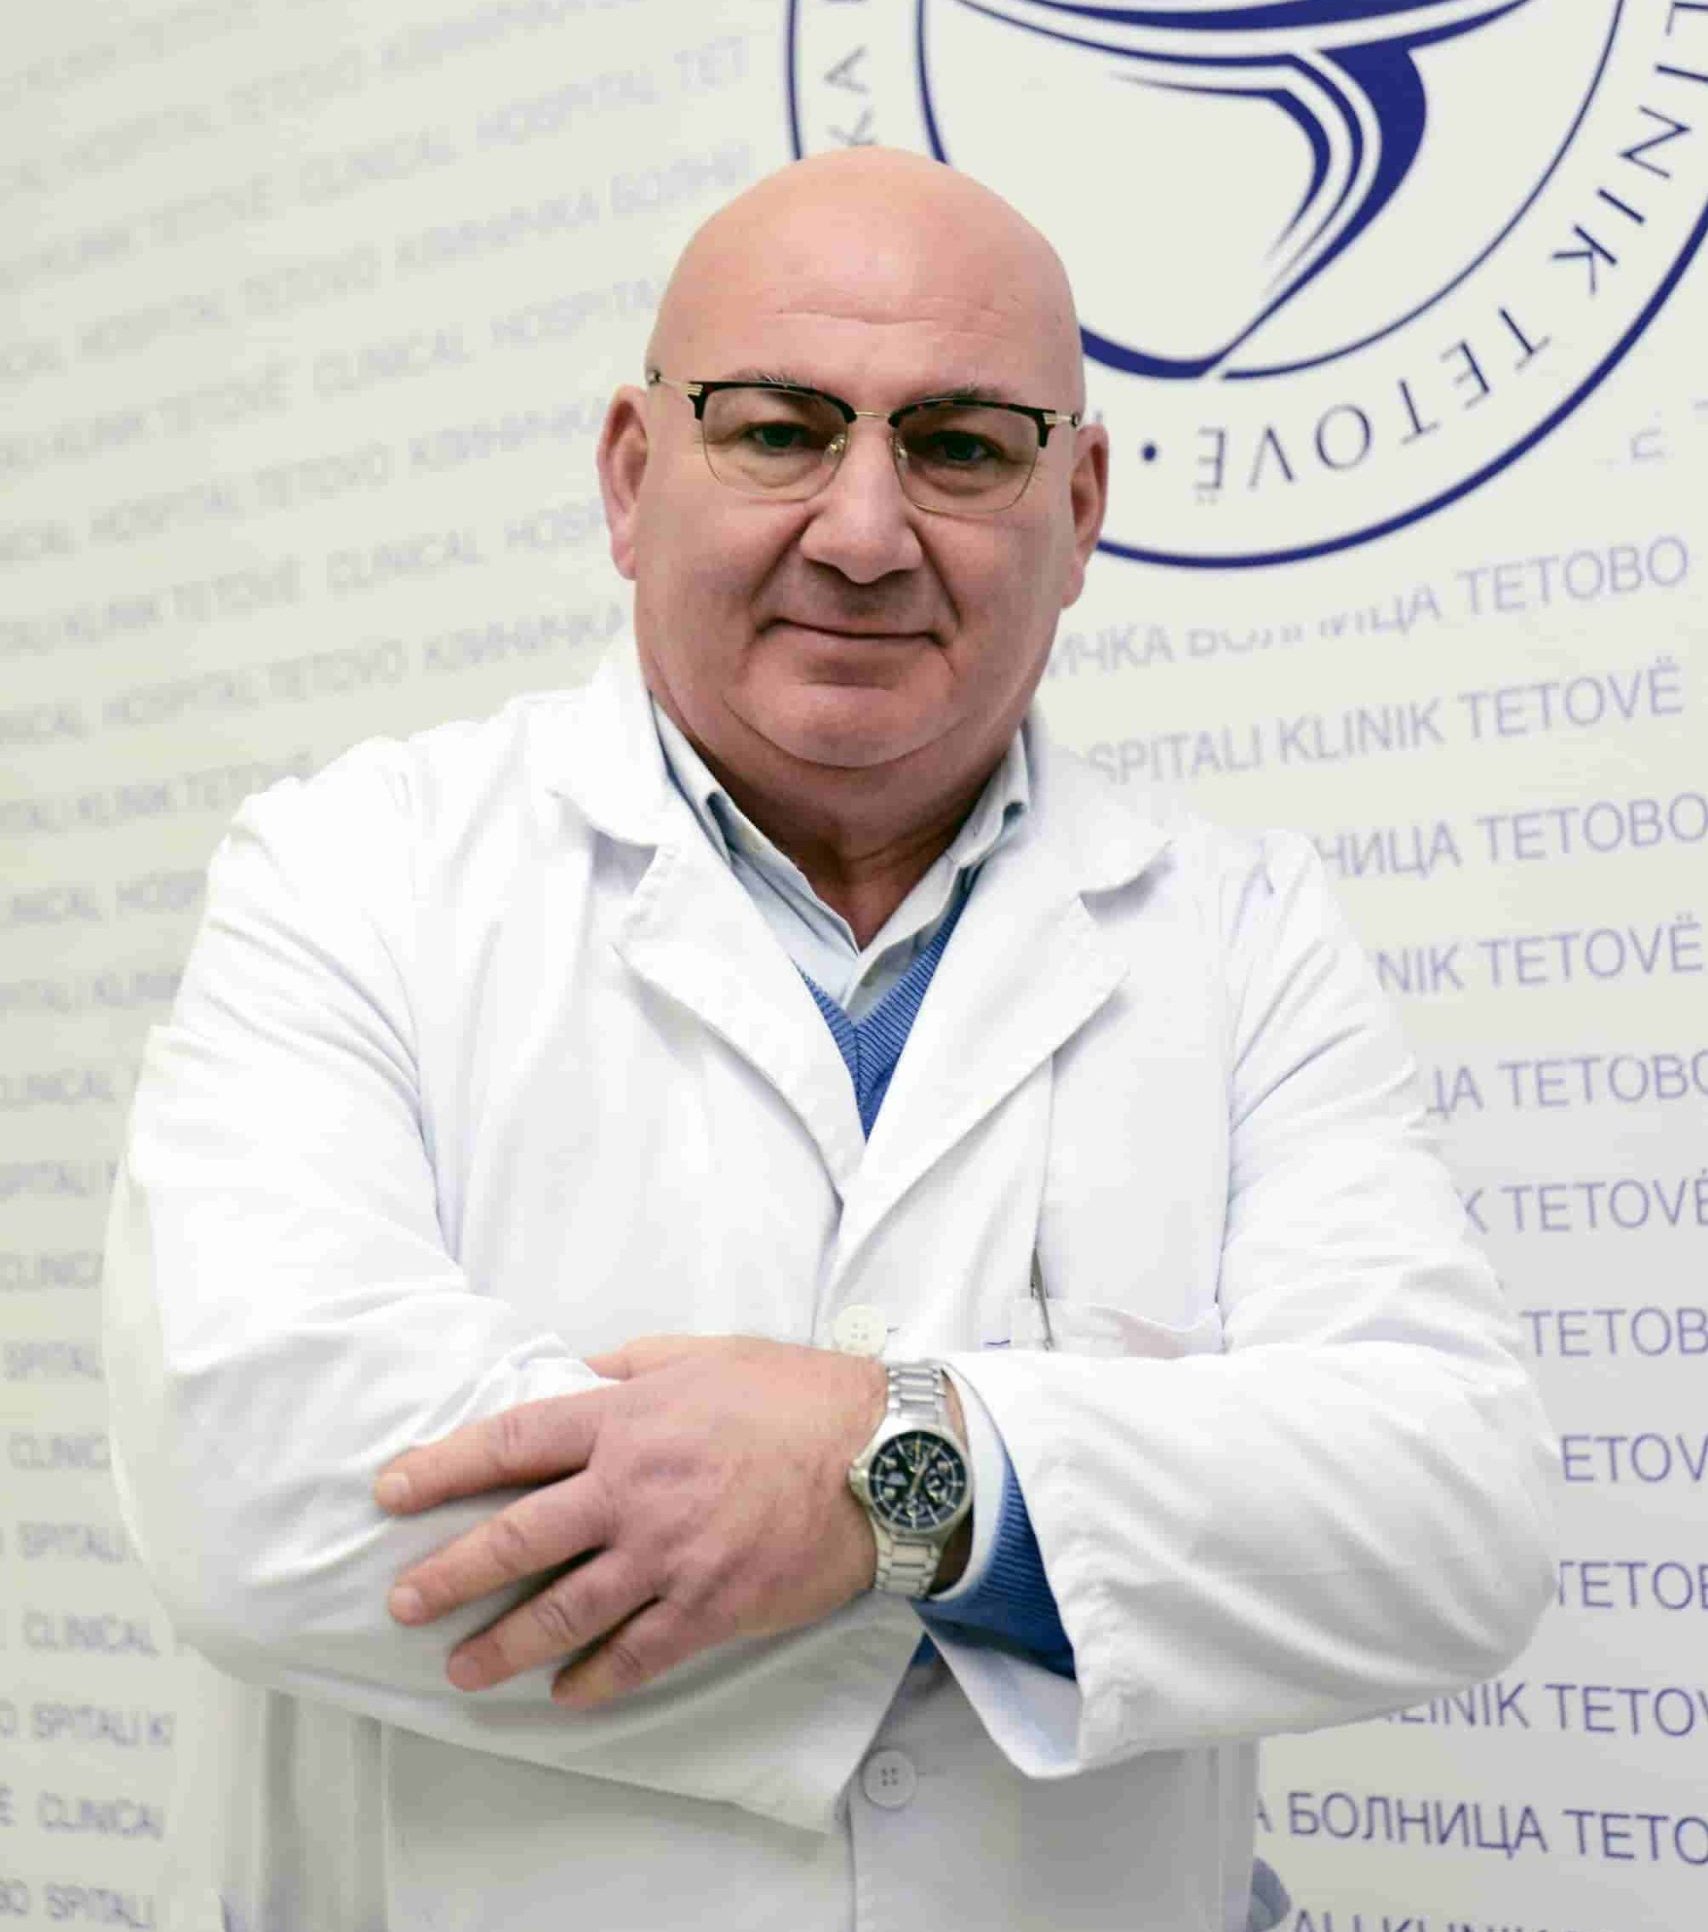 spec. dr. Aleksandar Kocevski